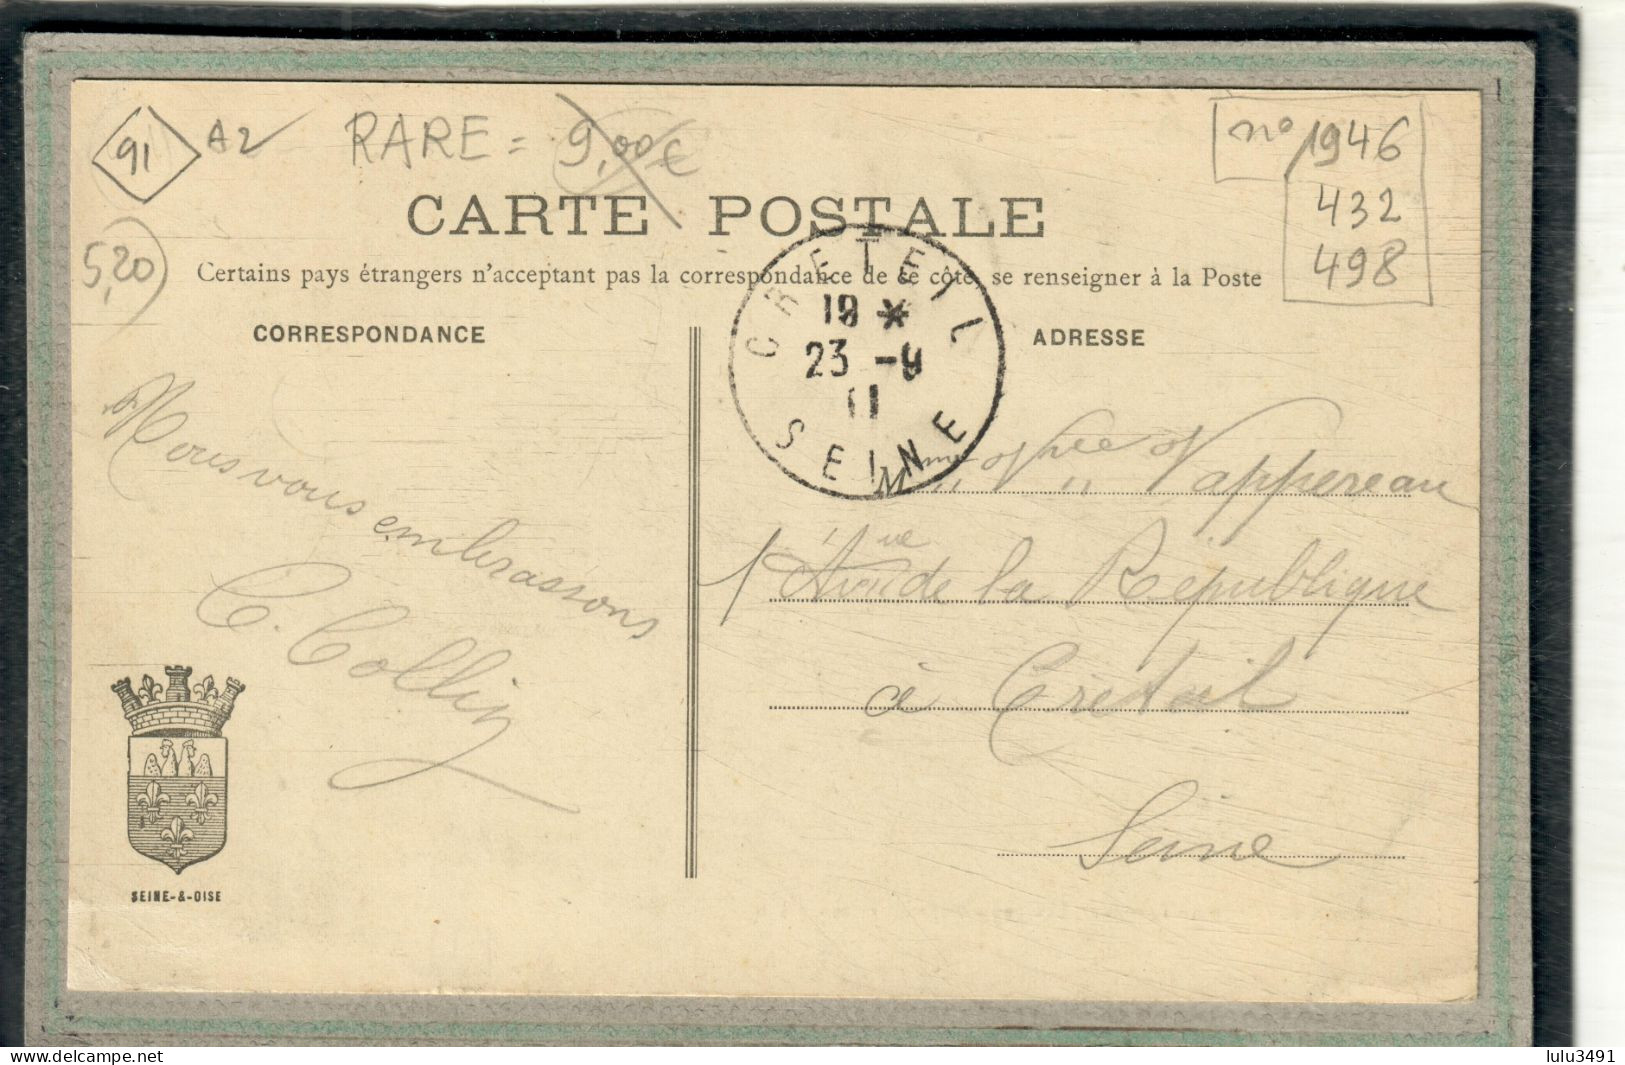 CPA (91) EPINAY-sur-ORGE - Aspect Du Bureau De Poste En Grande Rue En 1911 - Epinay-sur-Orge